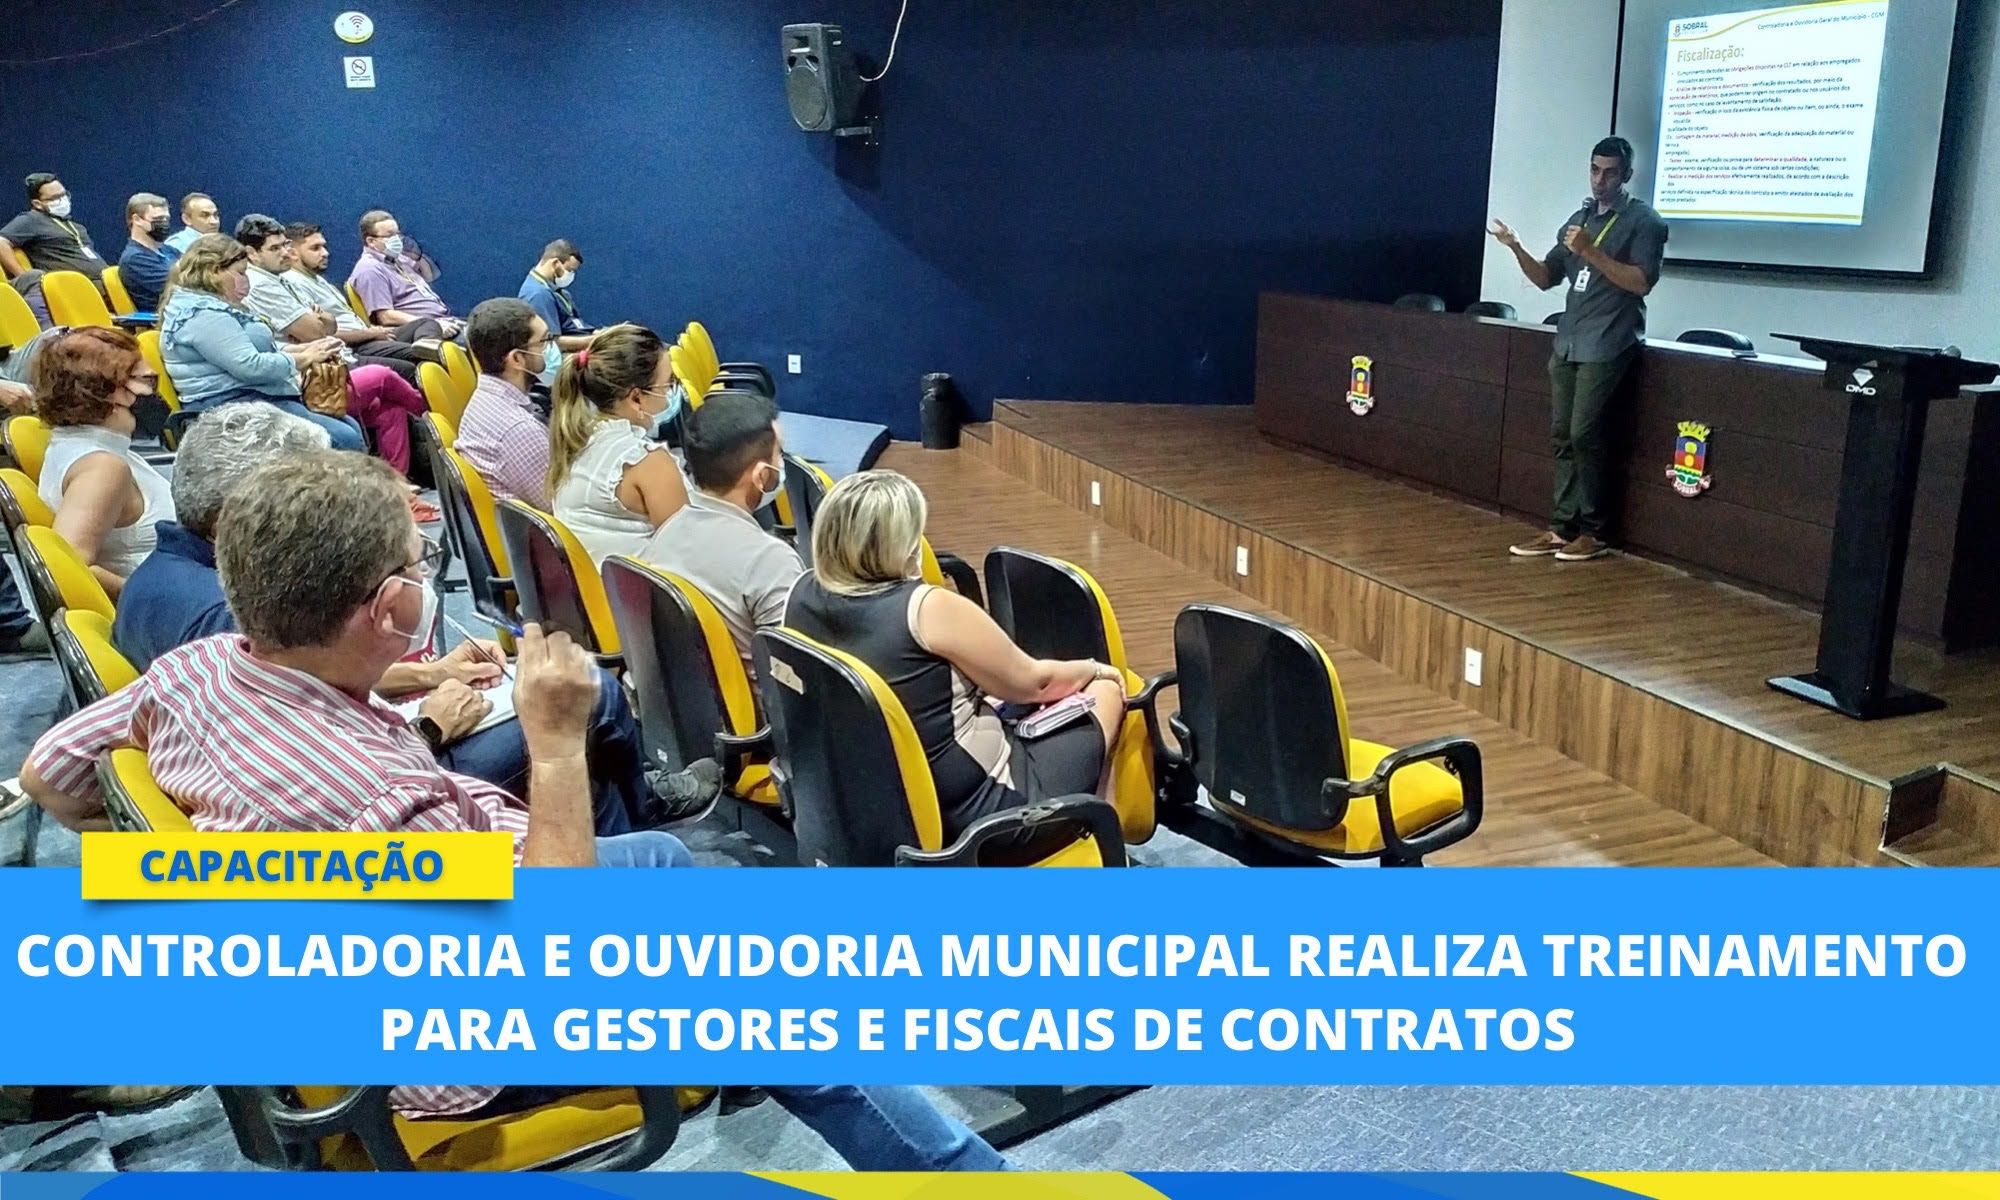 Controladoria e Ouvidoria Municipal realiza treinamento para gestores e fisca...